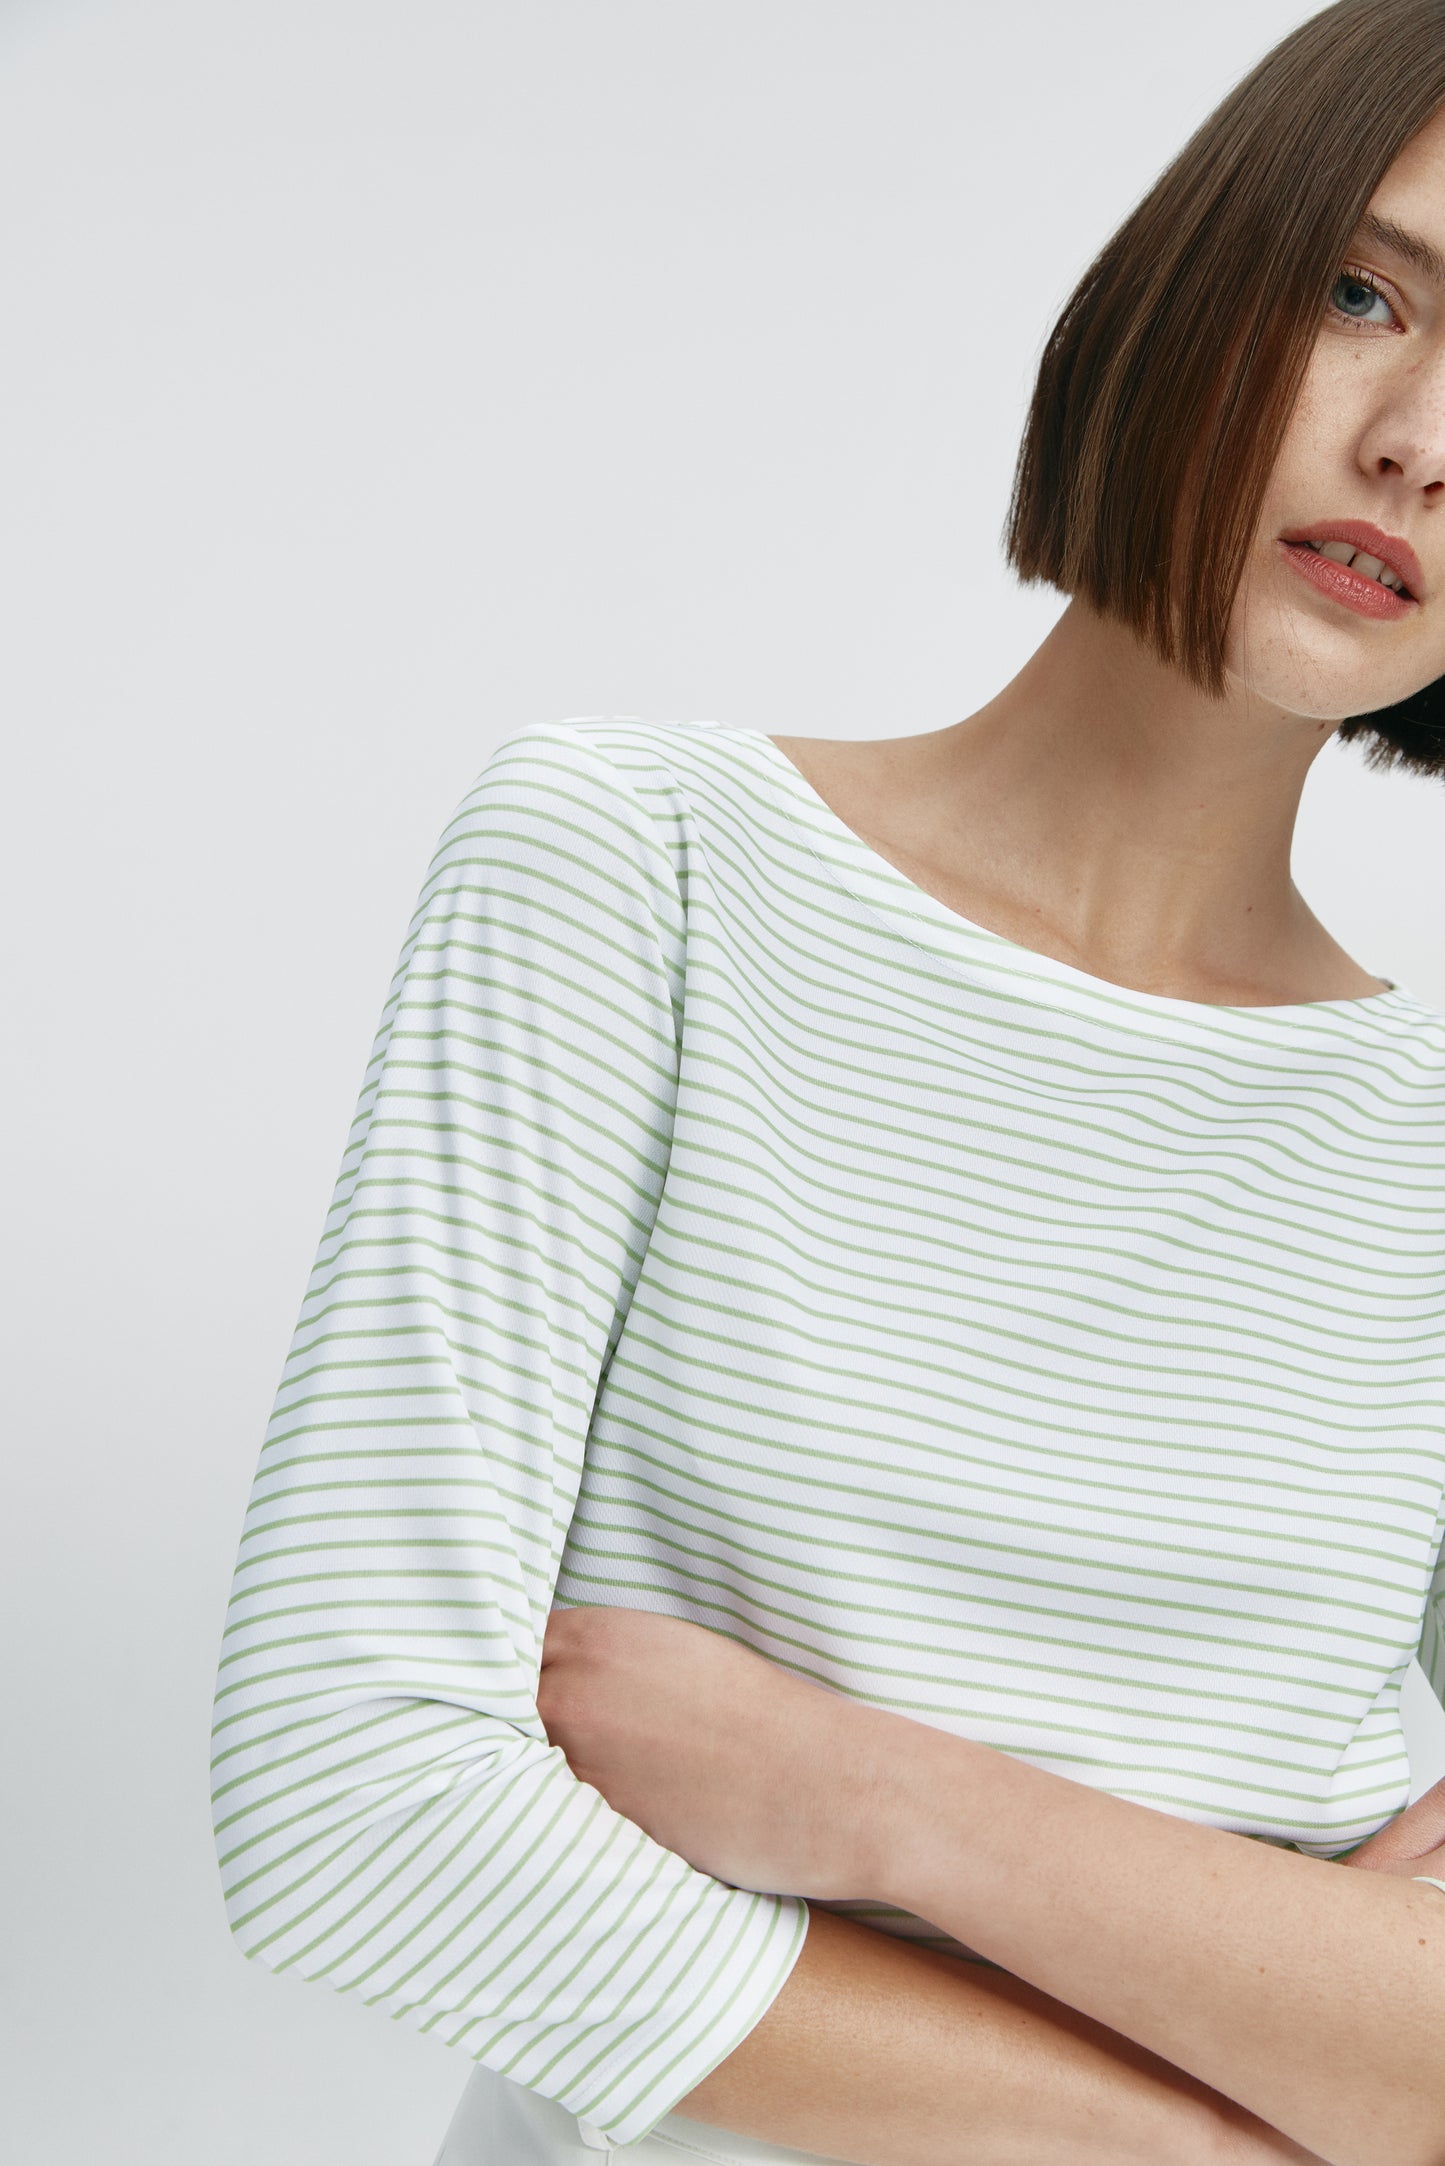 Camiseta para mujer con escote barco rayas verde Prenda básica perfecta para cualquier ocasión.Foto flexibilidad